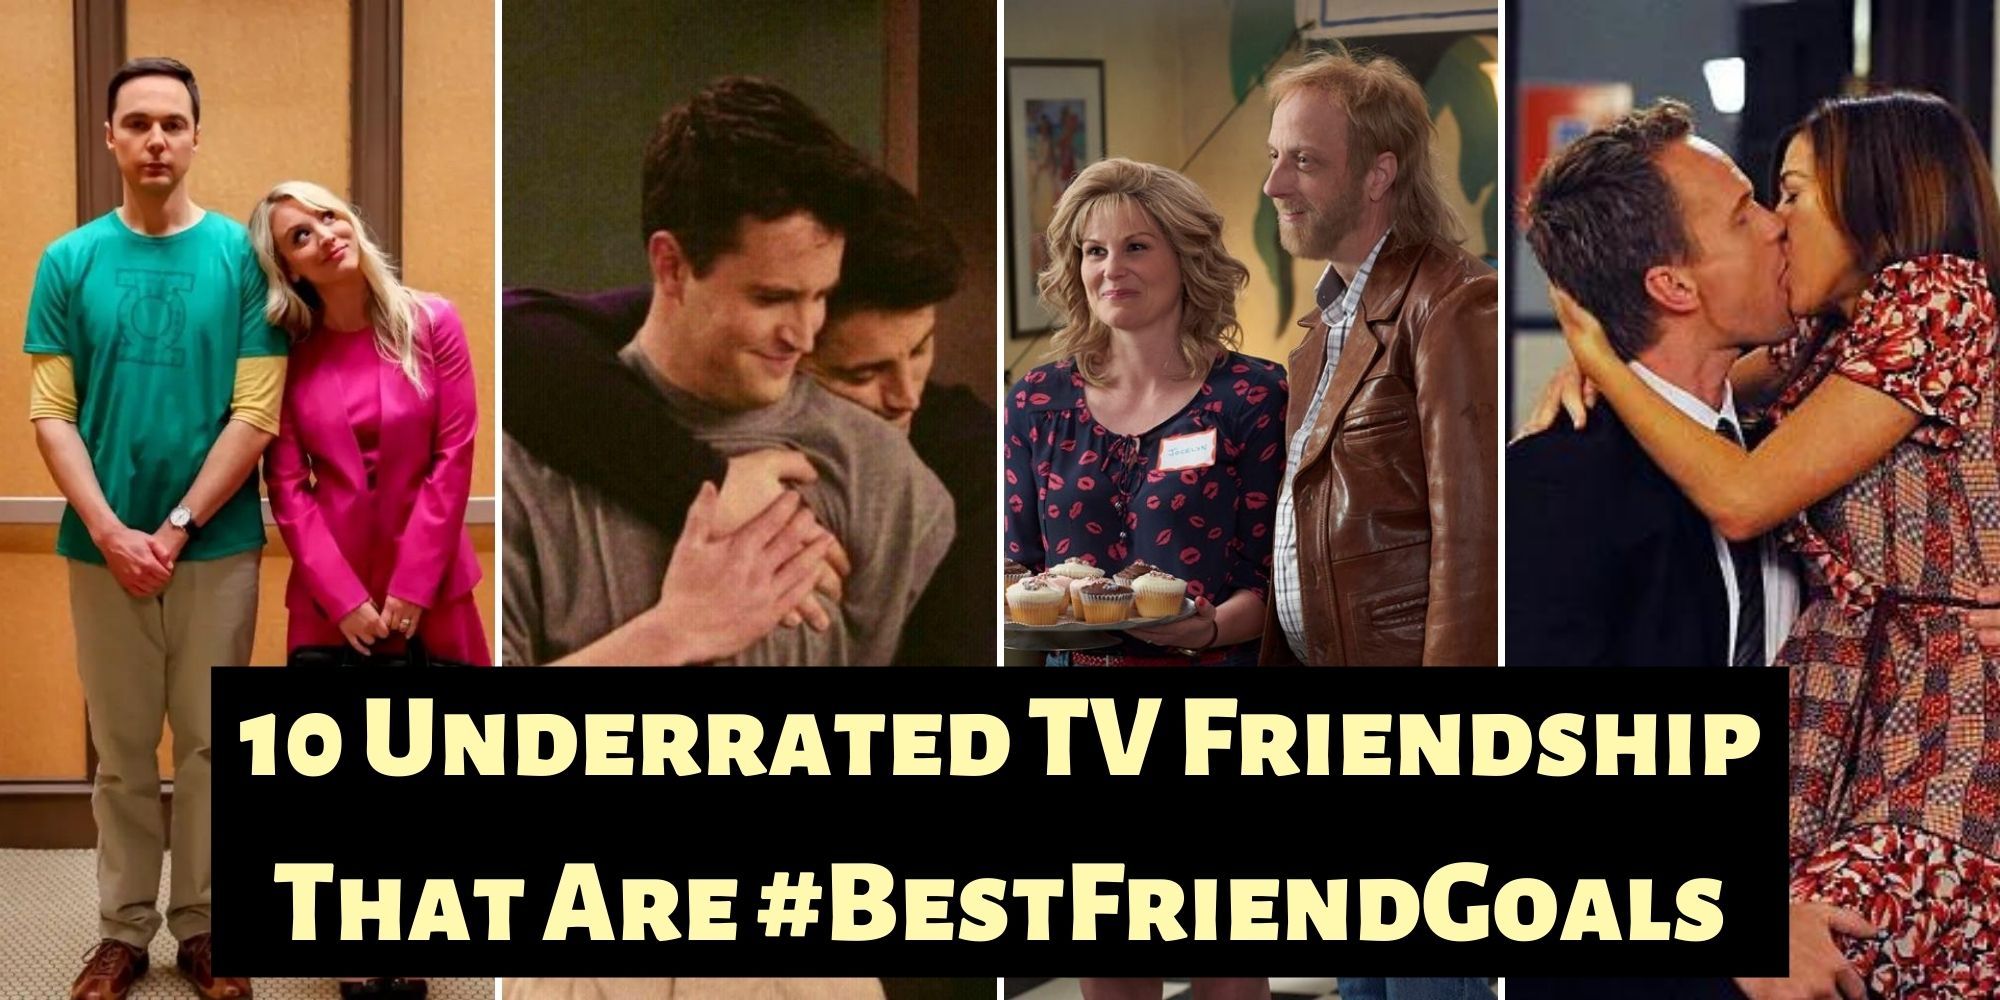 10 Underrated TV Friendships That Are #BestFriendGoals